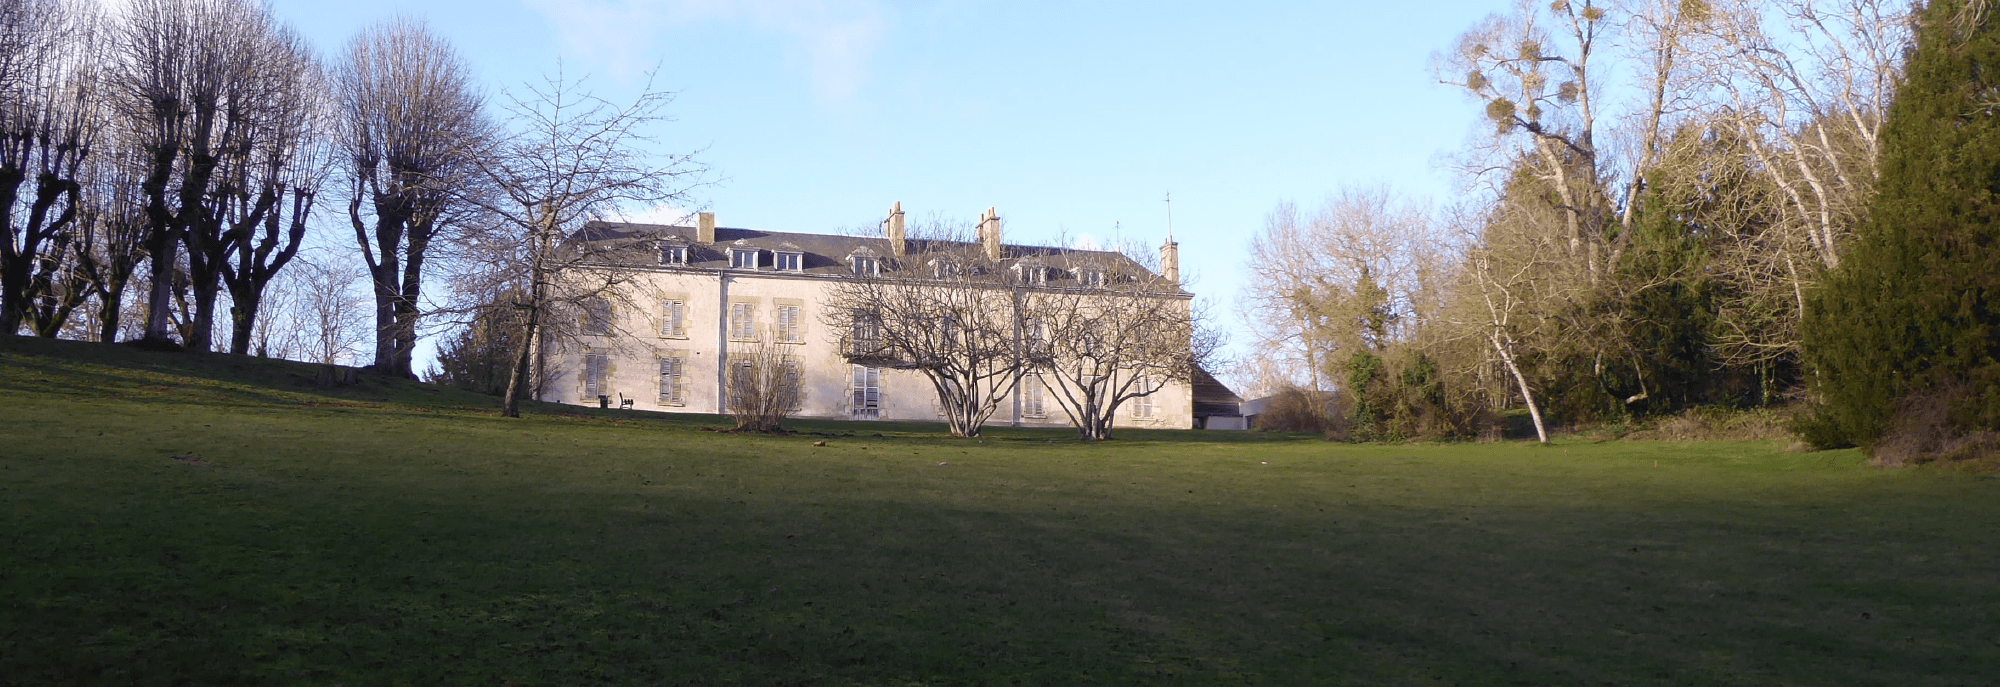 Château du parc de Bellecour.